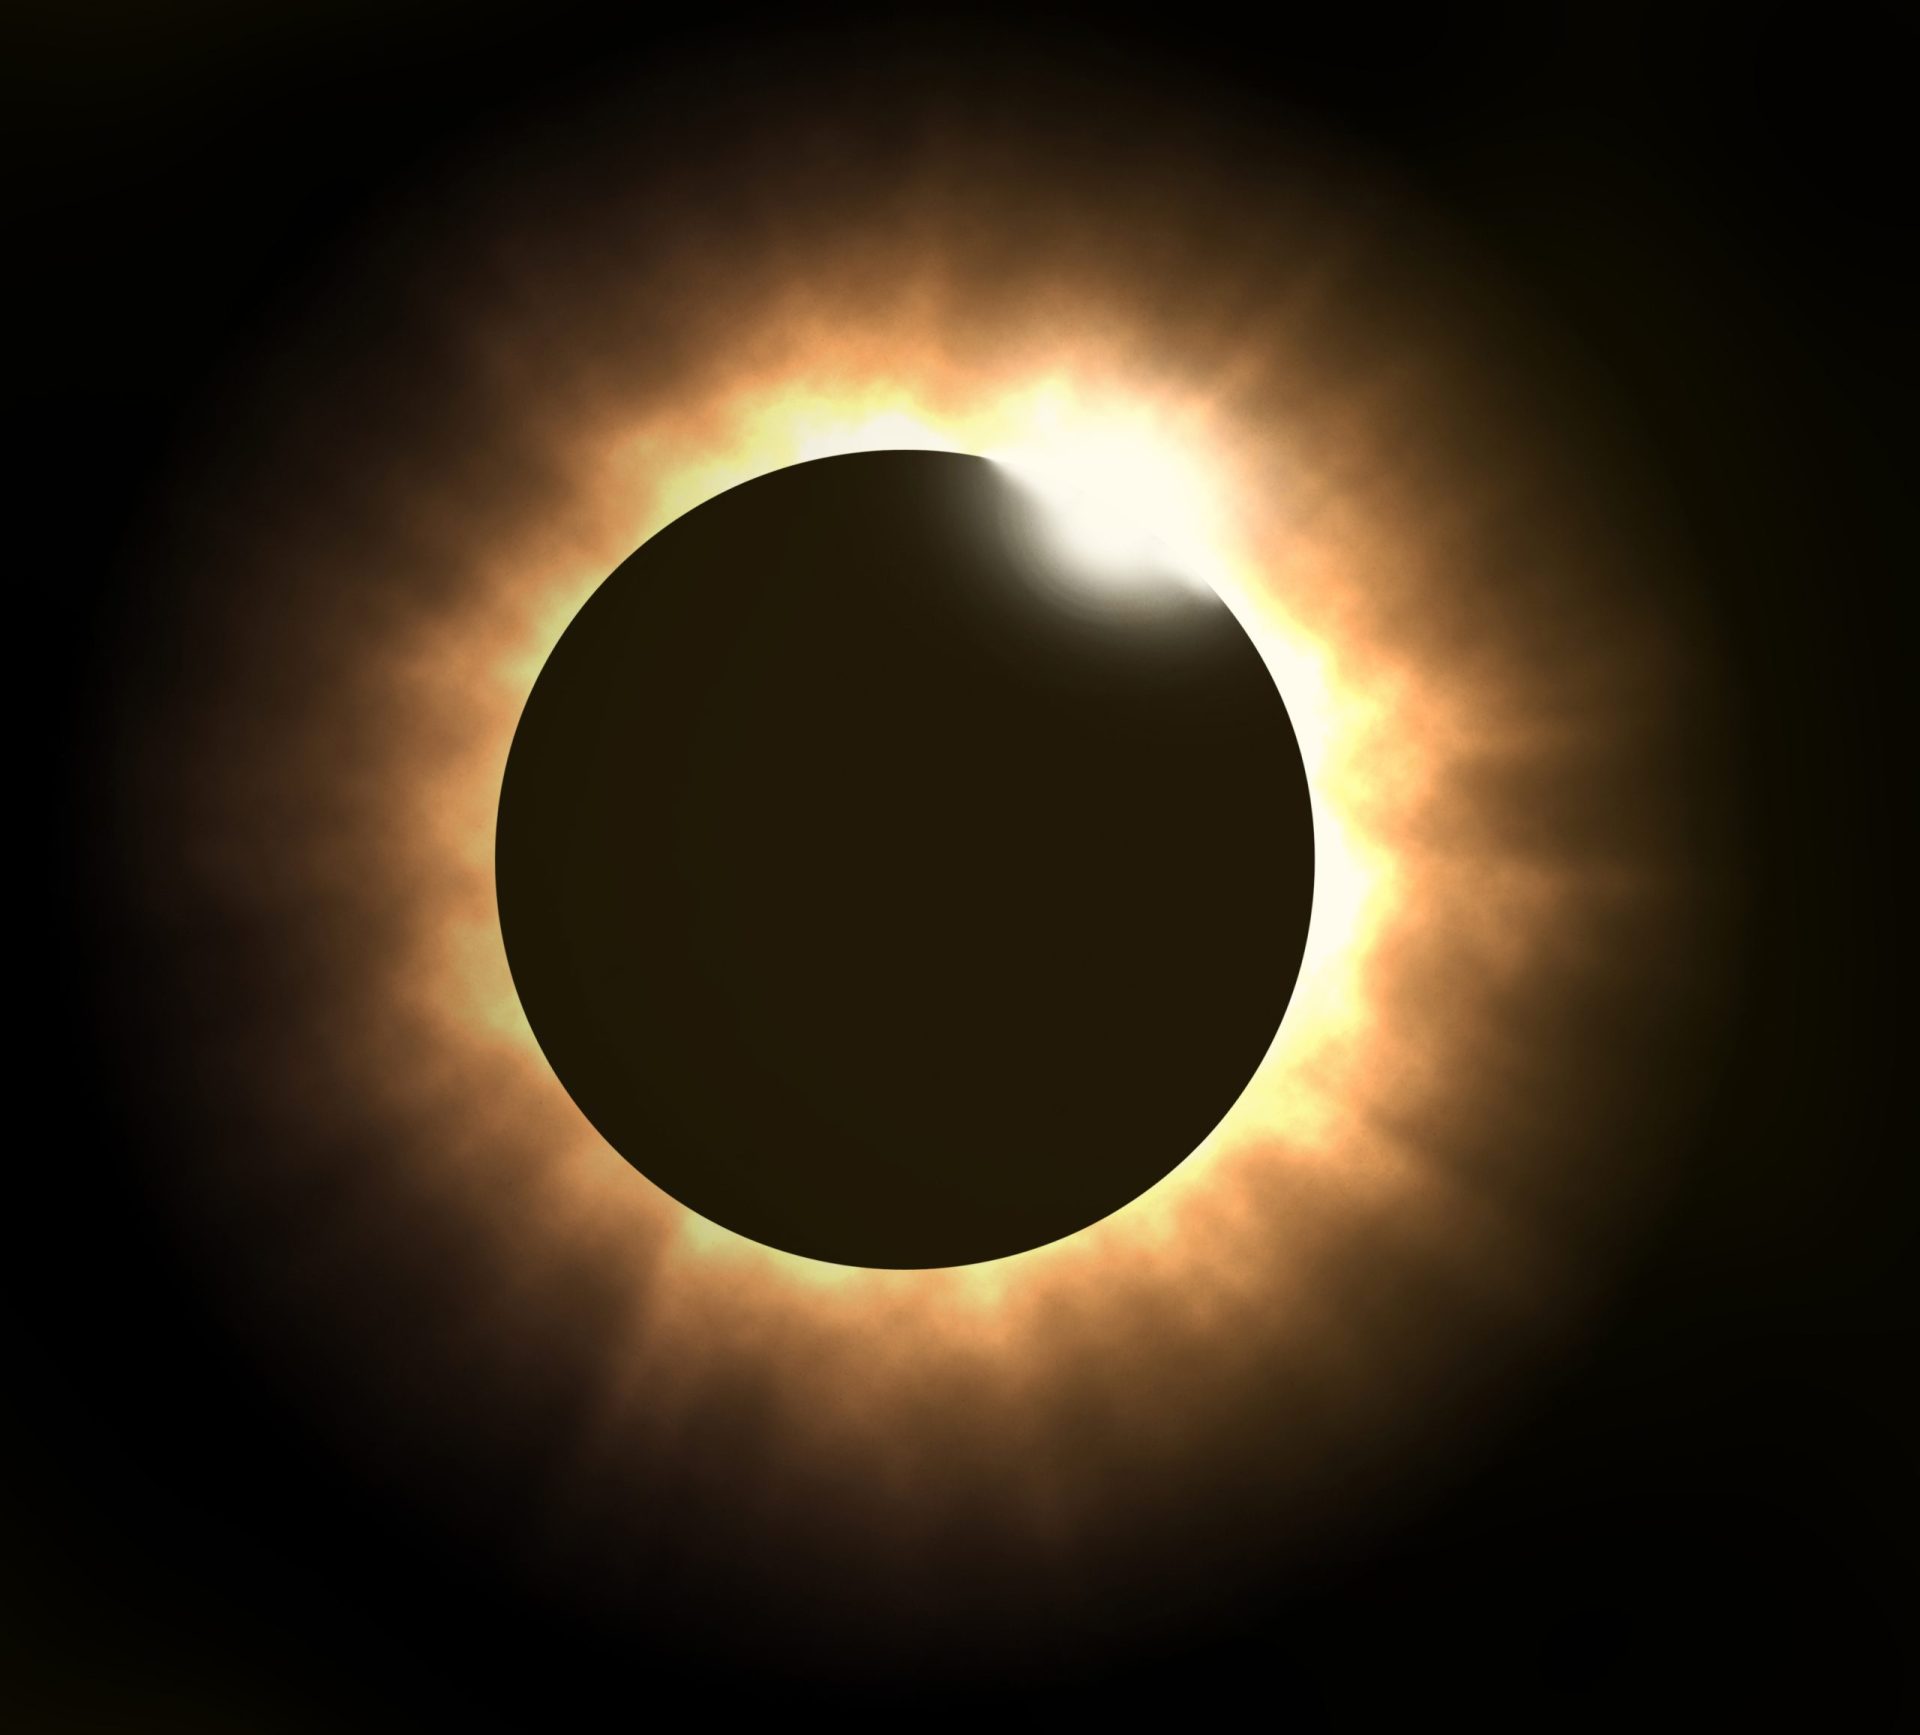 Sugestão de última hora para ver o eclipse em segurança